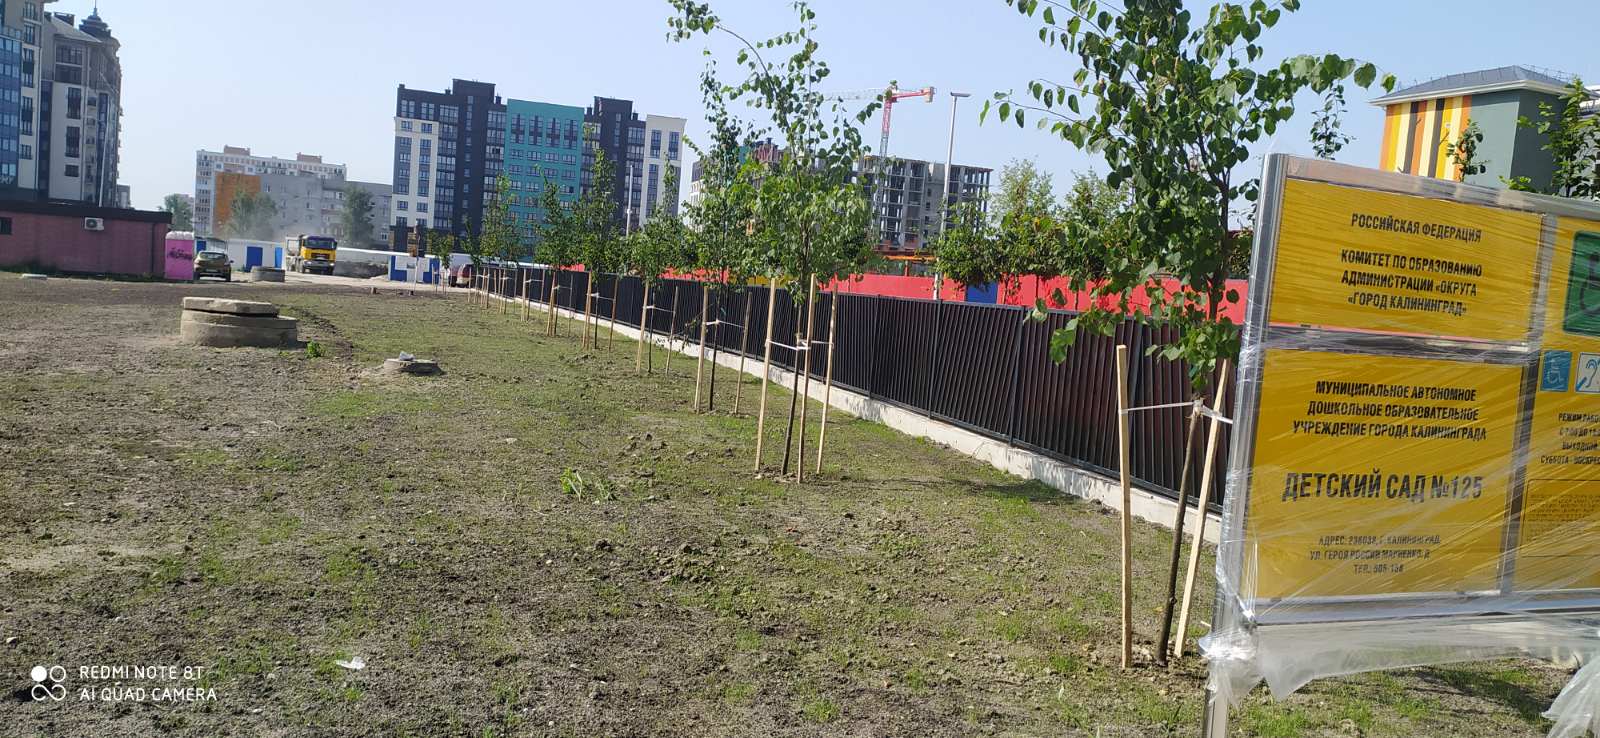 В Калининграде вместо 82 уничтоженных деревьев высадили 111 новых